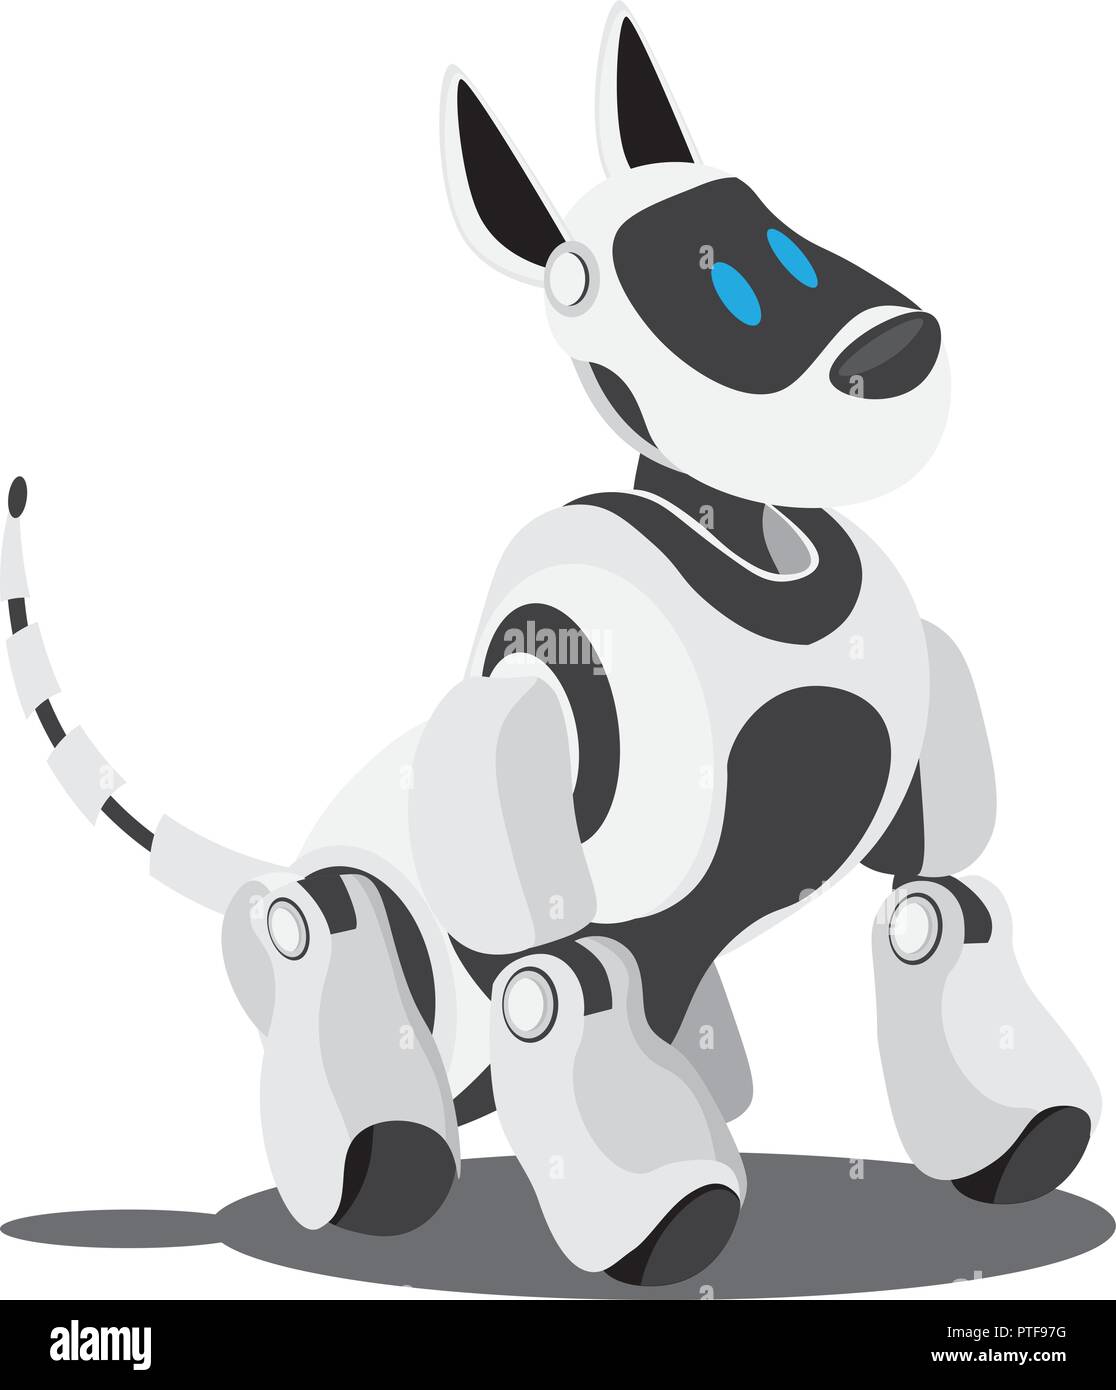 Die mechanische Roboter Hund, der beste Freund des Menschen. Vector Illustration zum Thema high technology. Stock Vektor